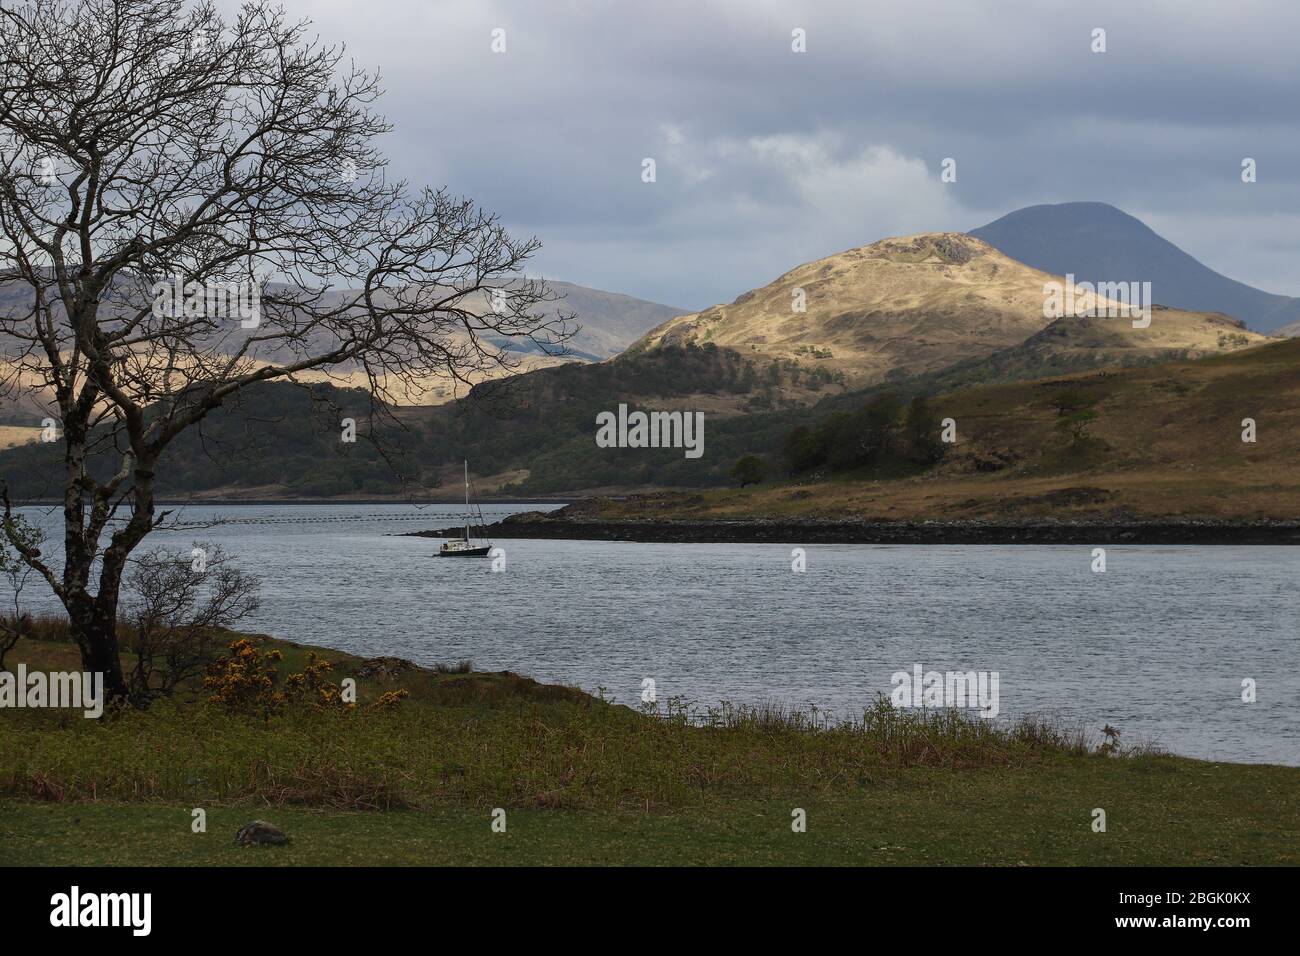 Un solitario velero sube al lago Spelve en la isla de Mull en Escocia. Un parche de luz solar ilumina la colina cercana, Ben azul más en la distancia Foto de stock